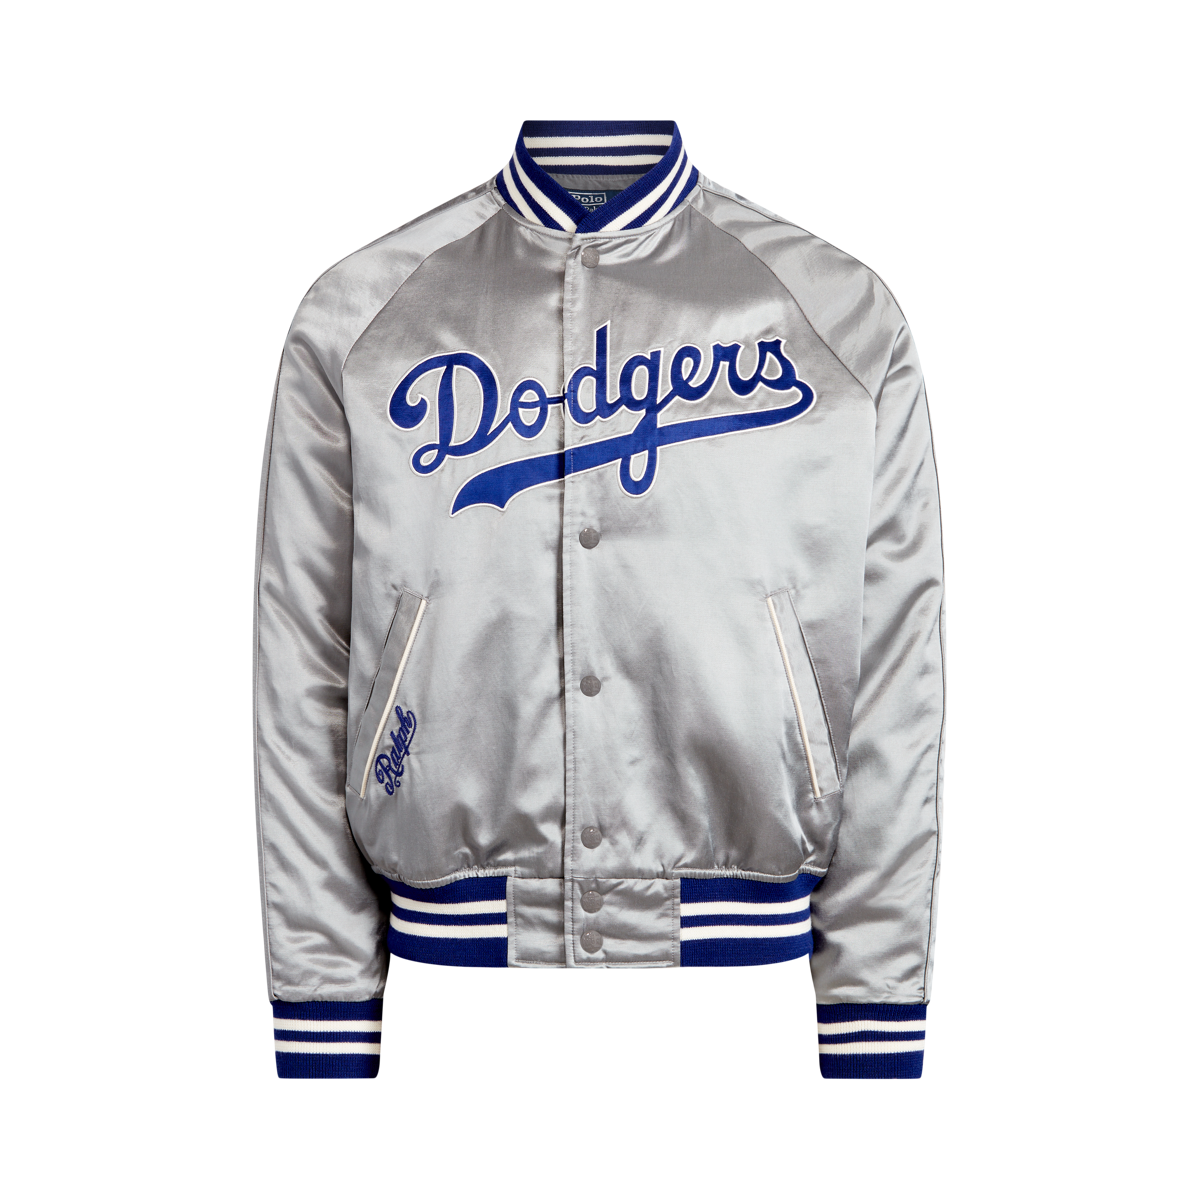 dodgers jacket price